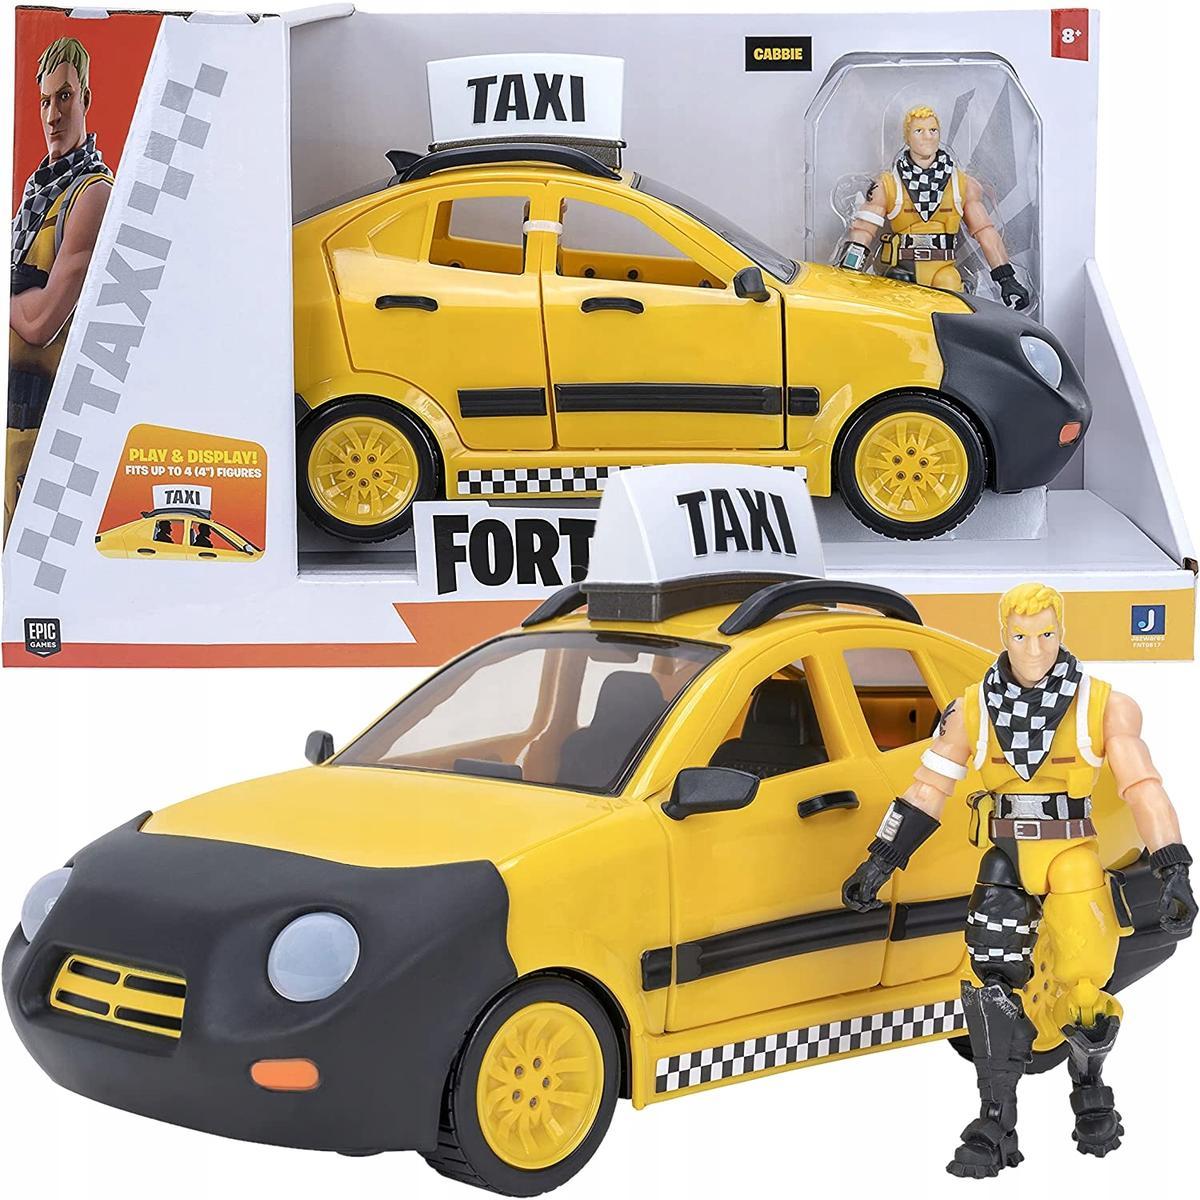 Figurka POJAZD TAXI fortnite Taxi Father Cabbie dla dziecka  0 Full Screen